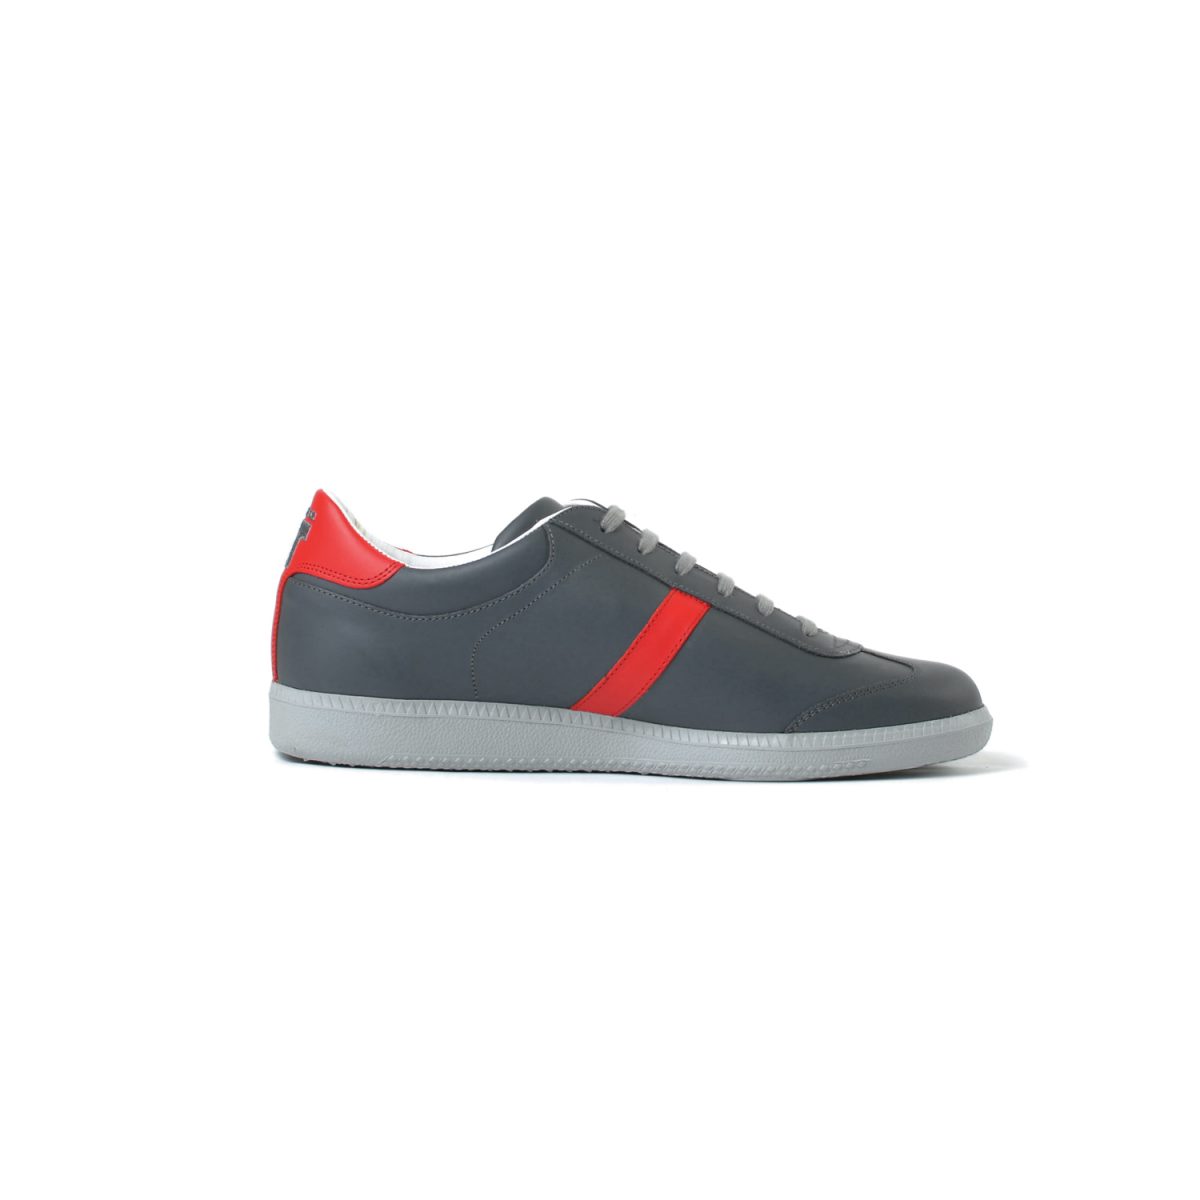 Tisza cipő - Compakt - Szürke-piros